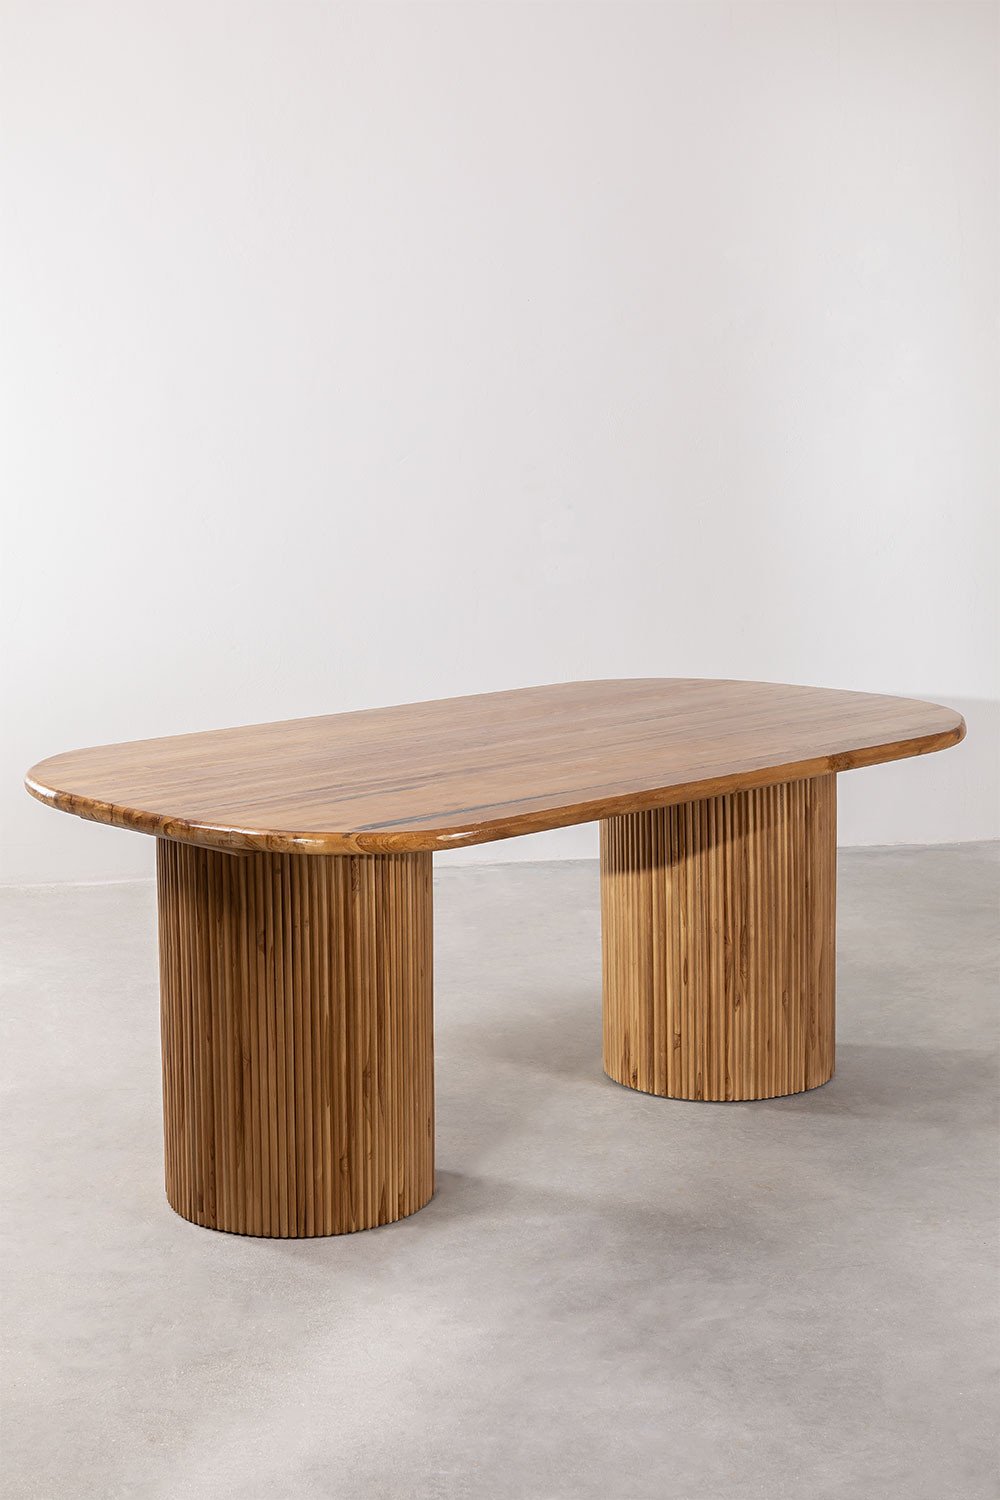 Tavolo da pranzo ovale in legno di teak (200x110 cm) Randall, immagine della galleria 2